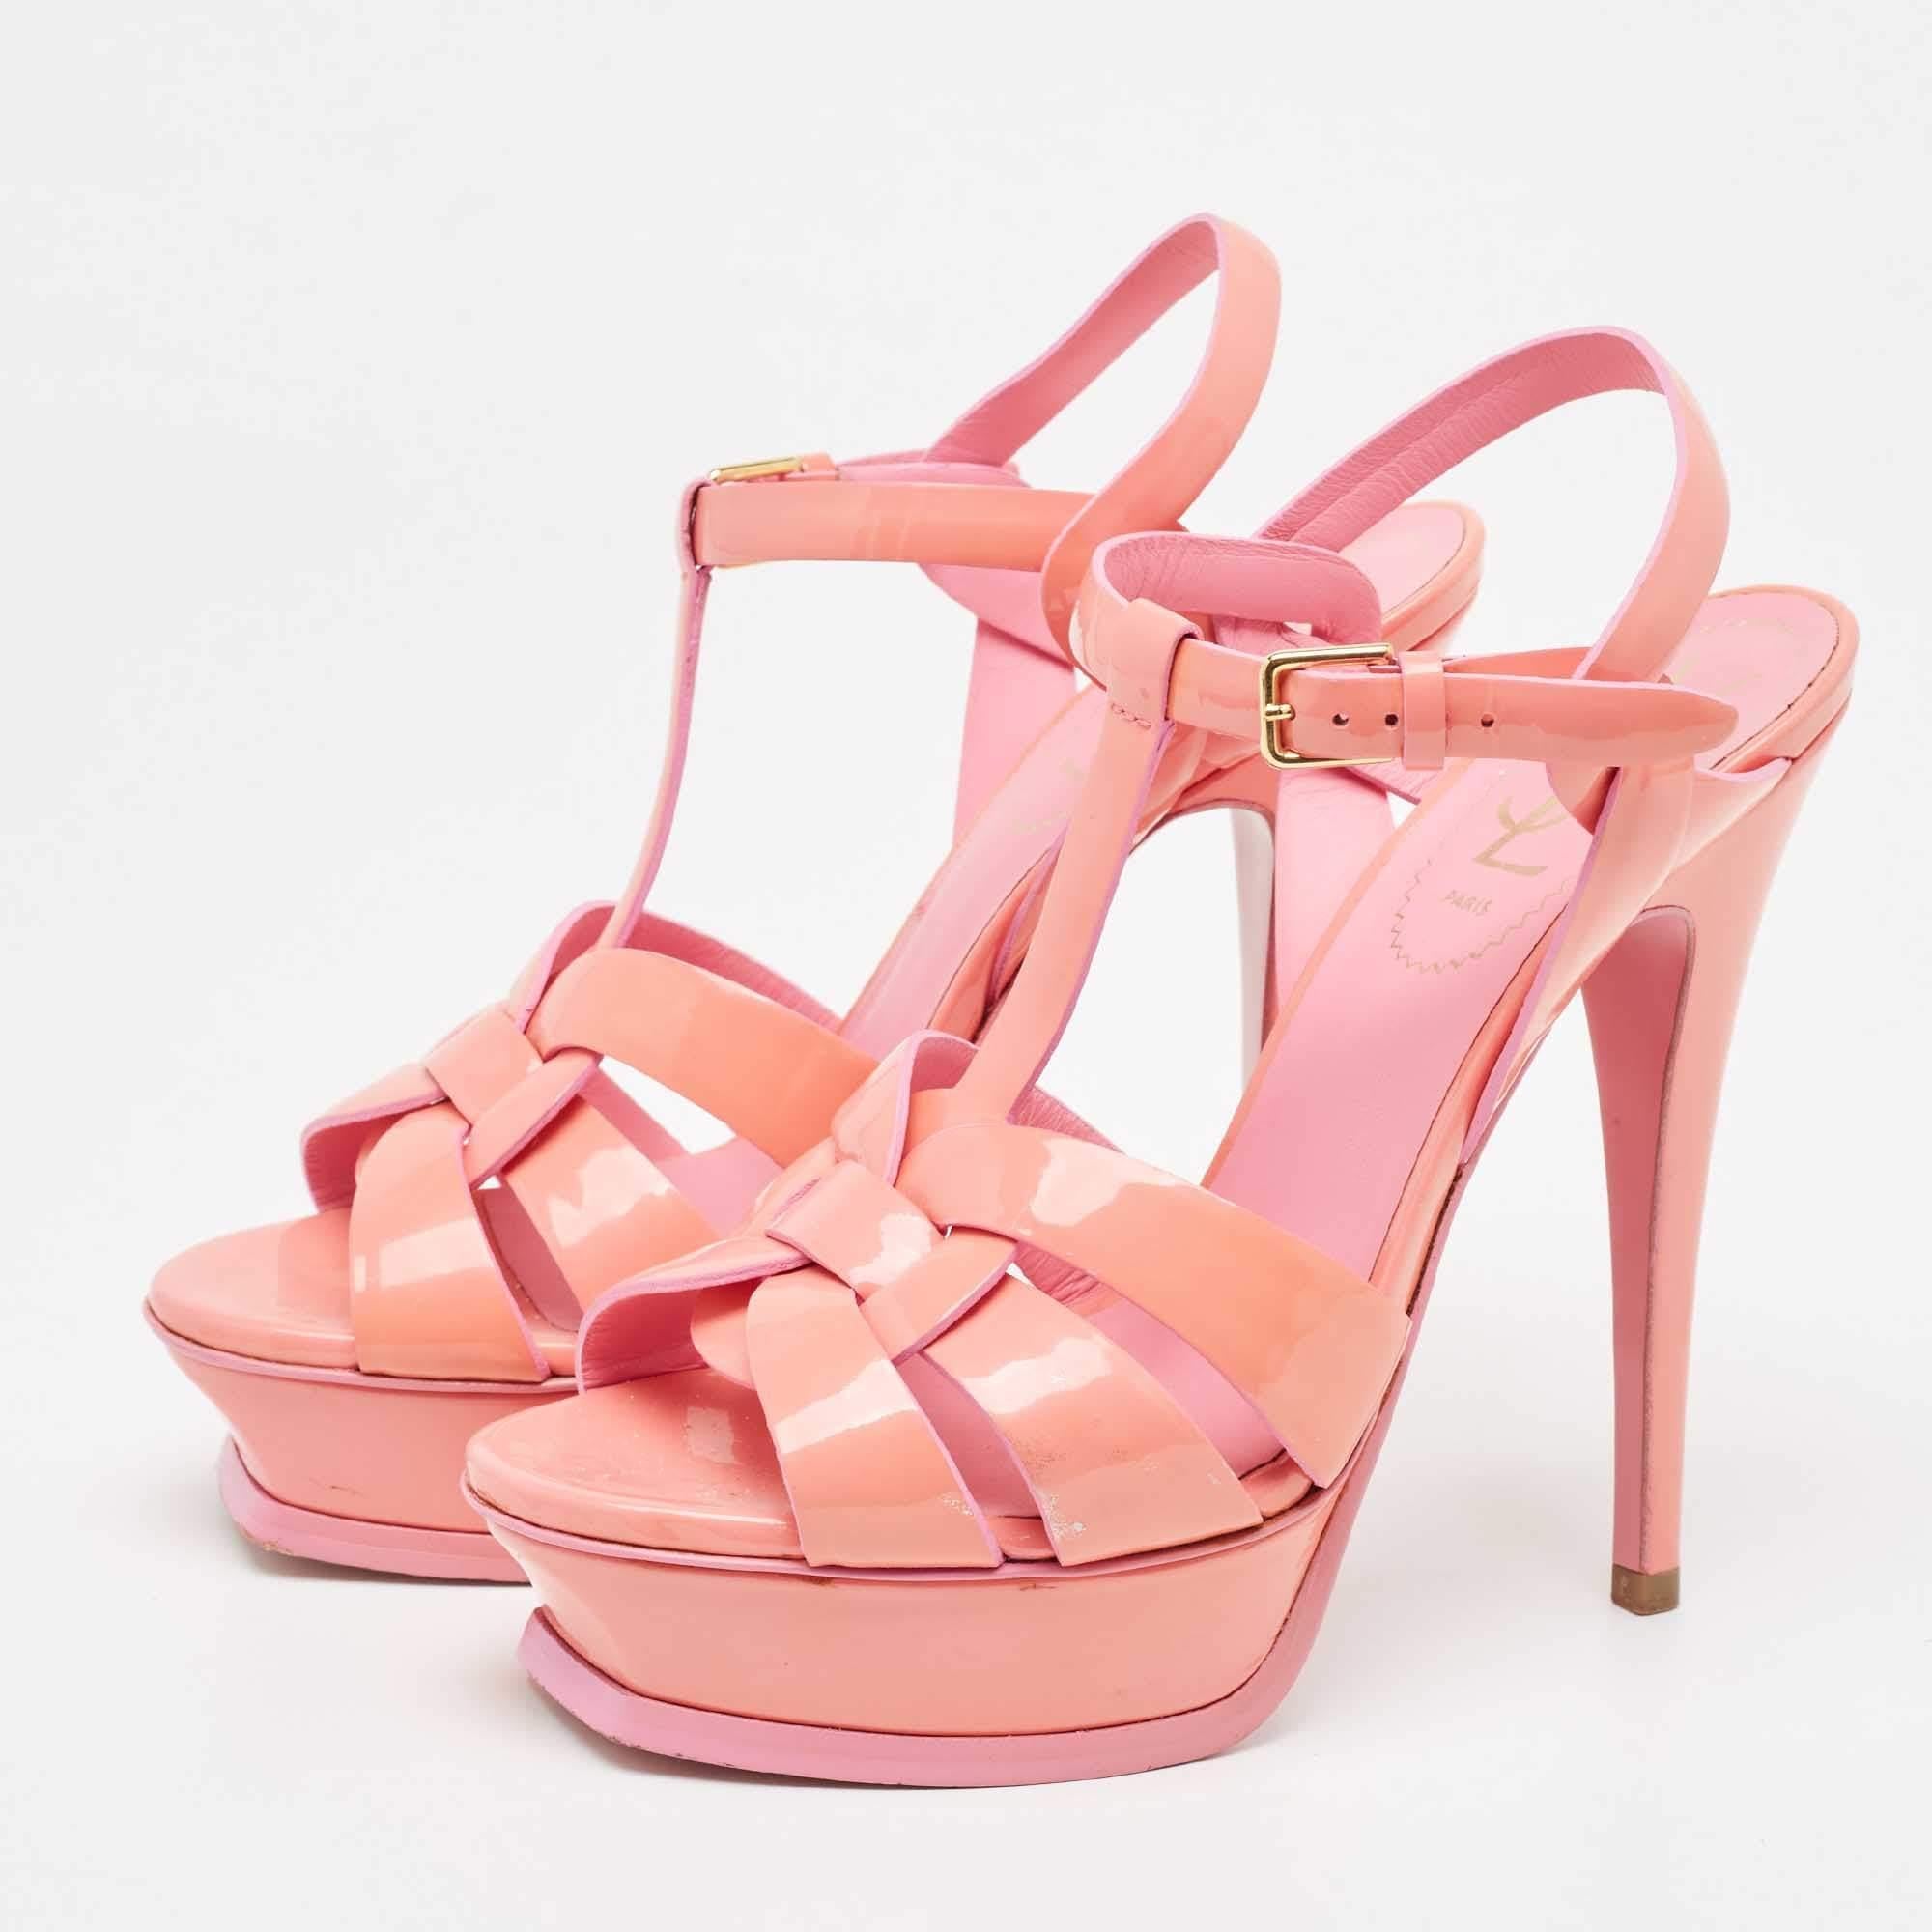 Yves Saint Laurent Pink Patent Tribute Sandals Size 37 3